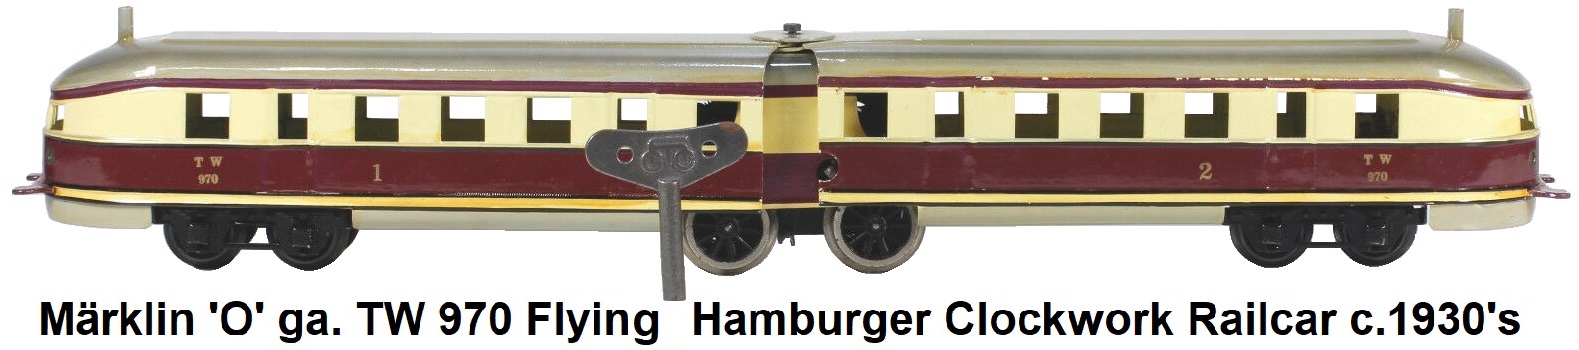 Märklin Pre-war 'O' gauge TW 970 Flying Hamburger clockwork railcars circa 1930's